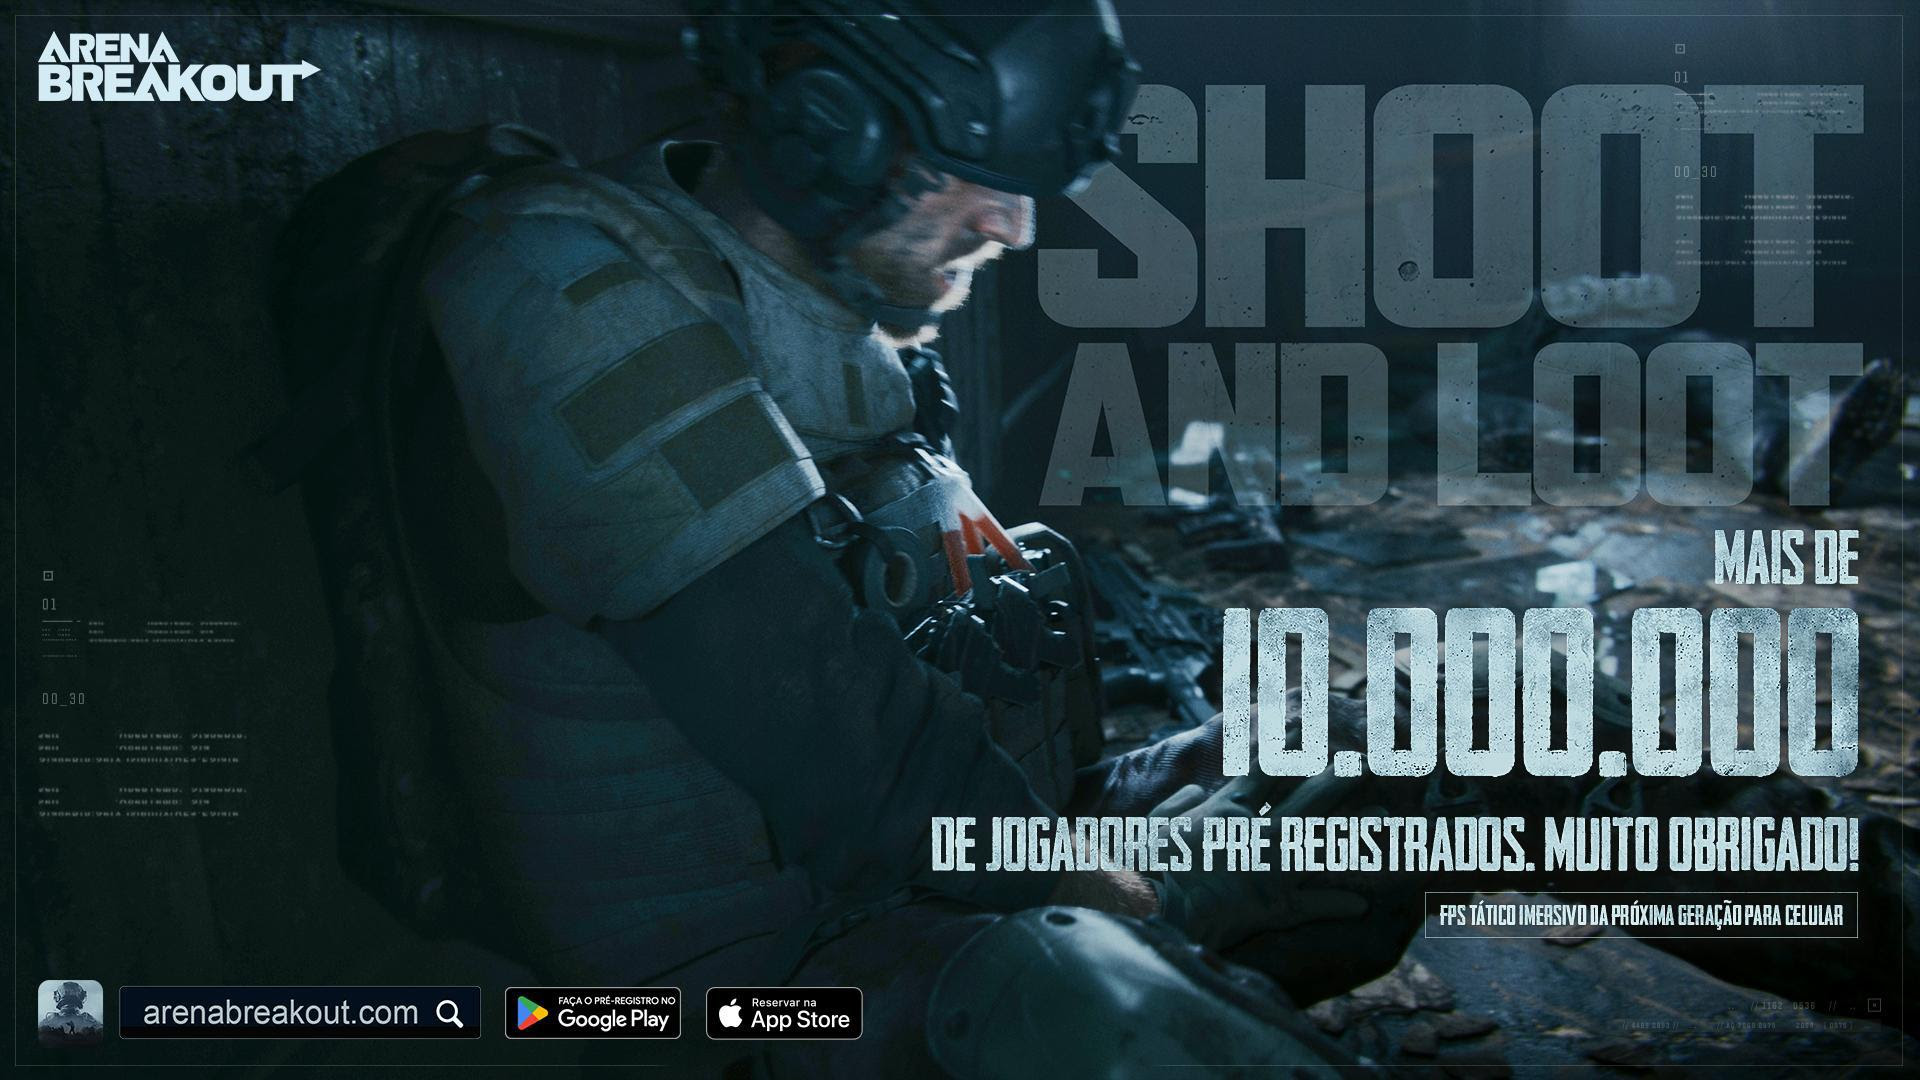 Arena Breakout, jogo mobile de tiro tático, será lançado em 14 de julho